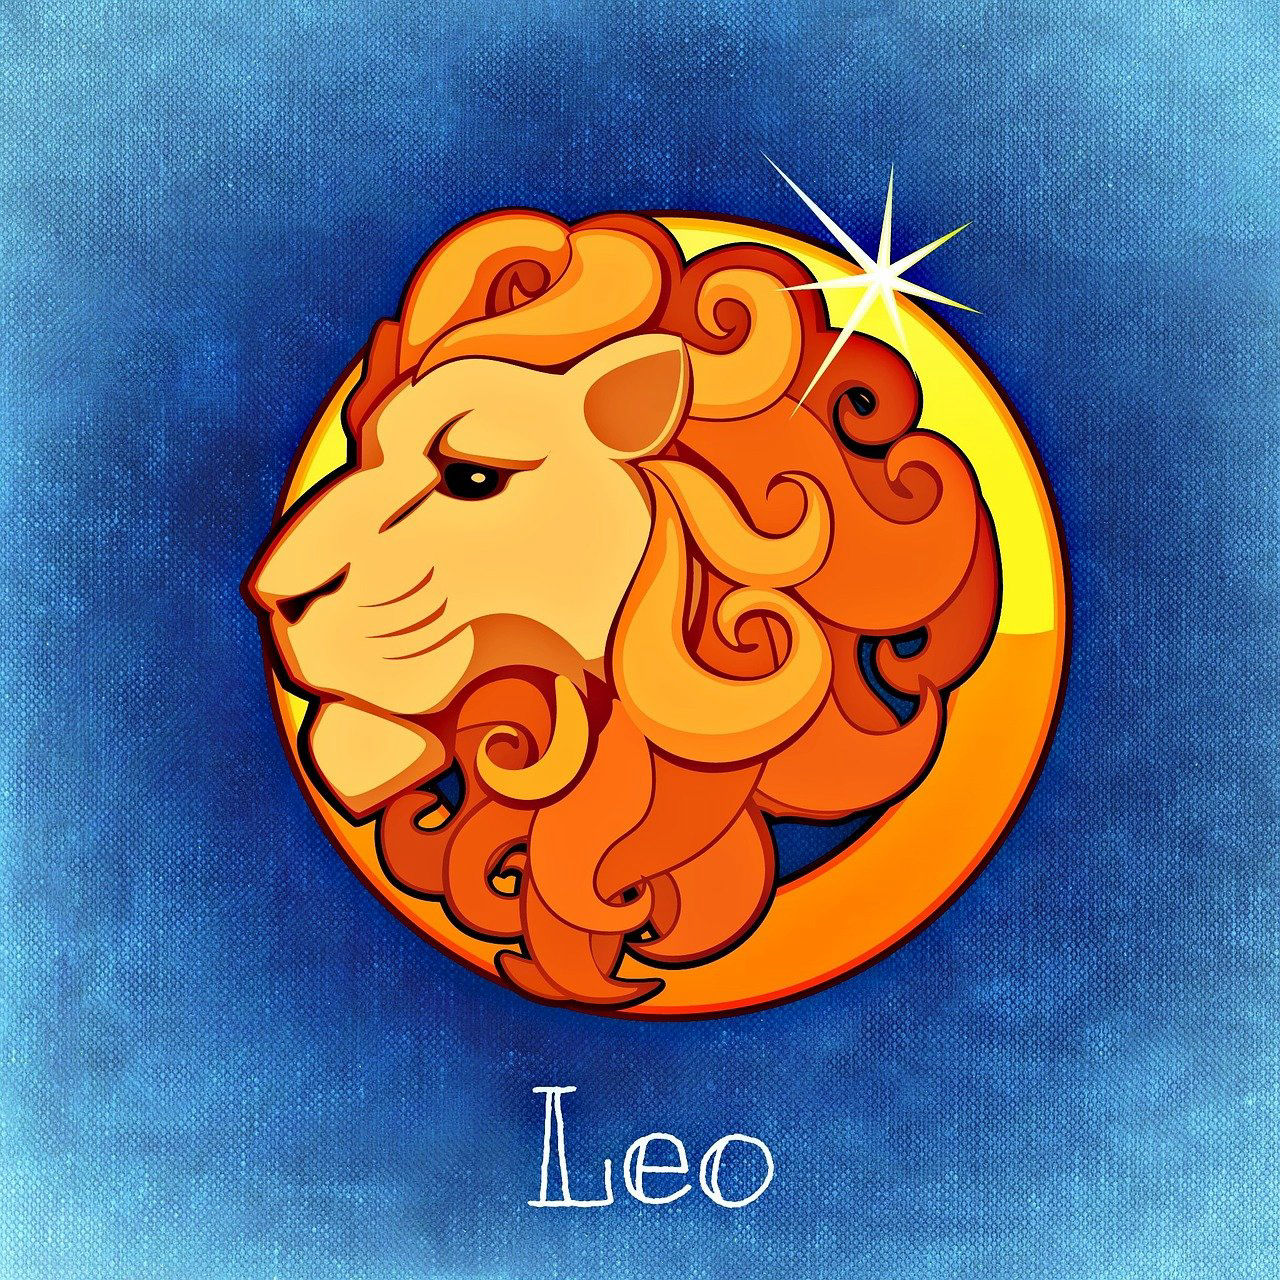 ζώδιο λέων, lion, αστρολογία